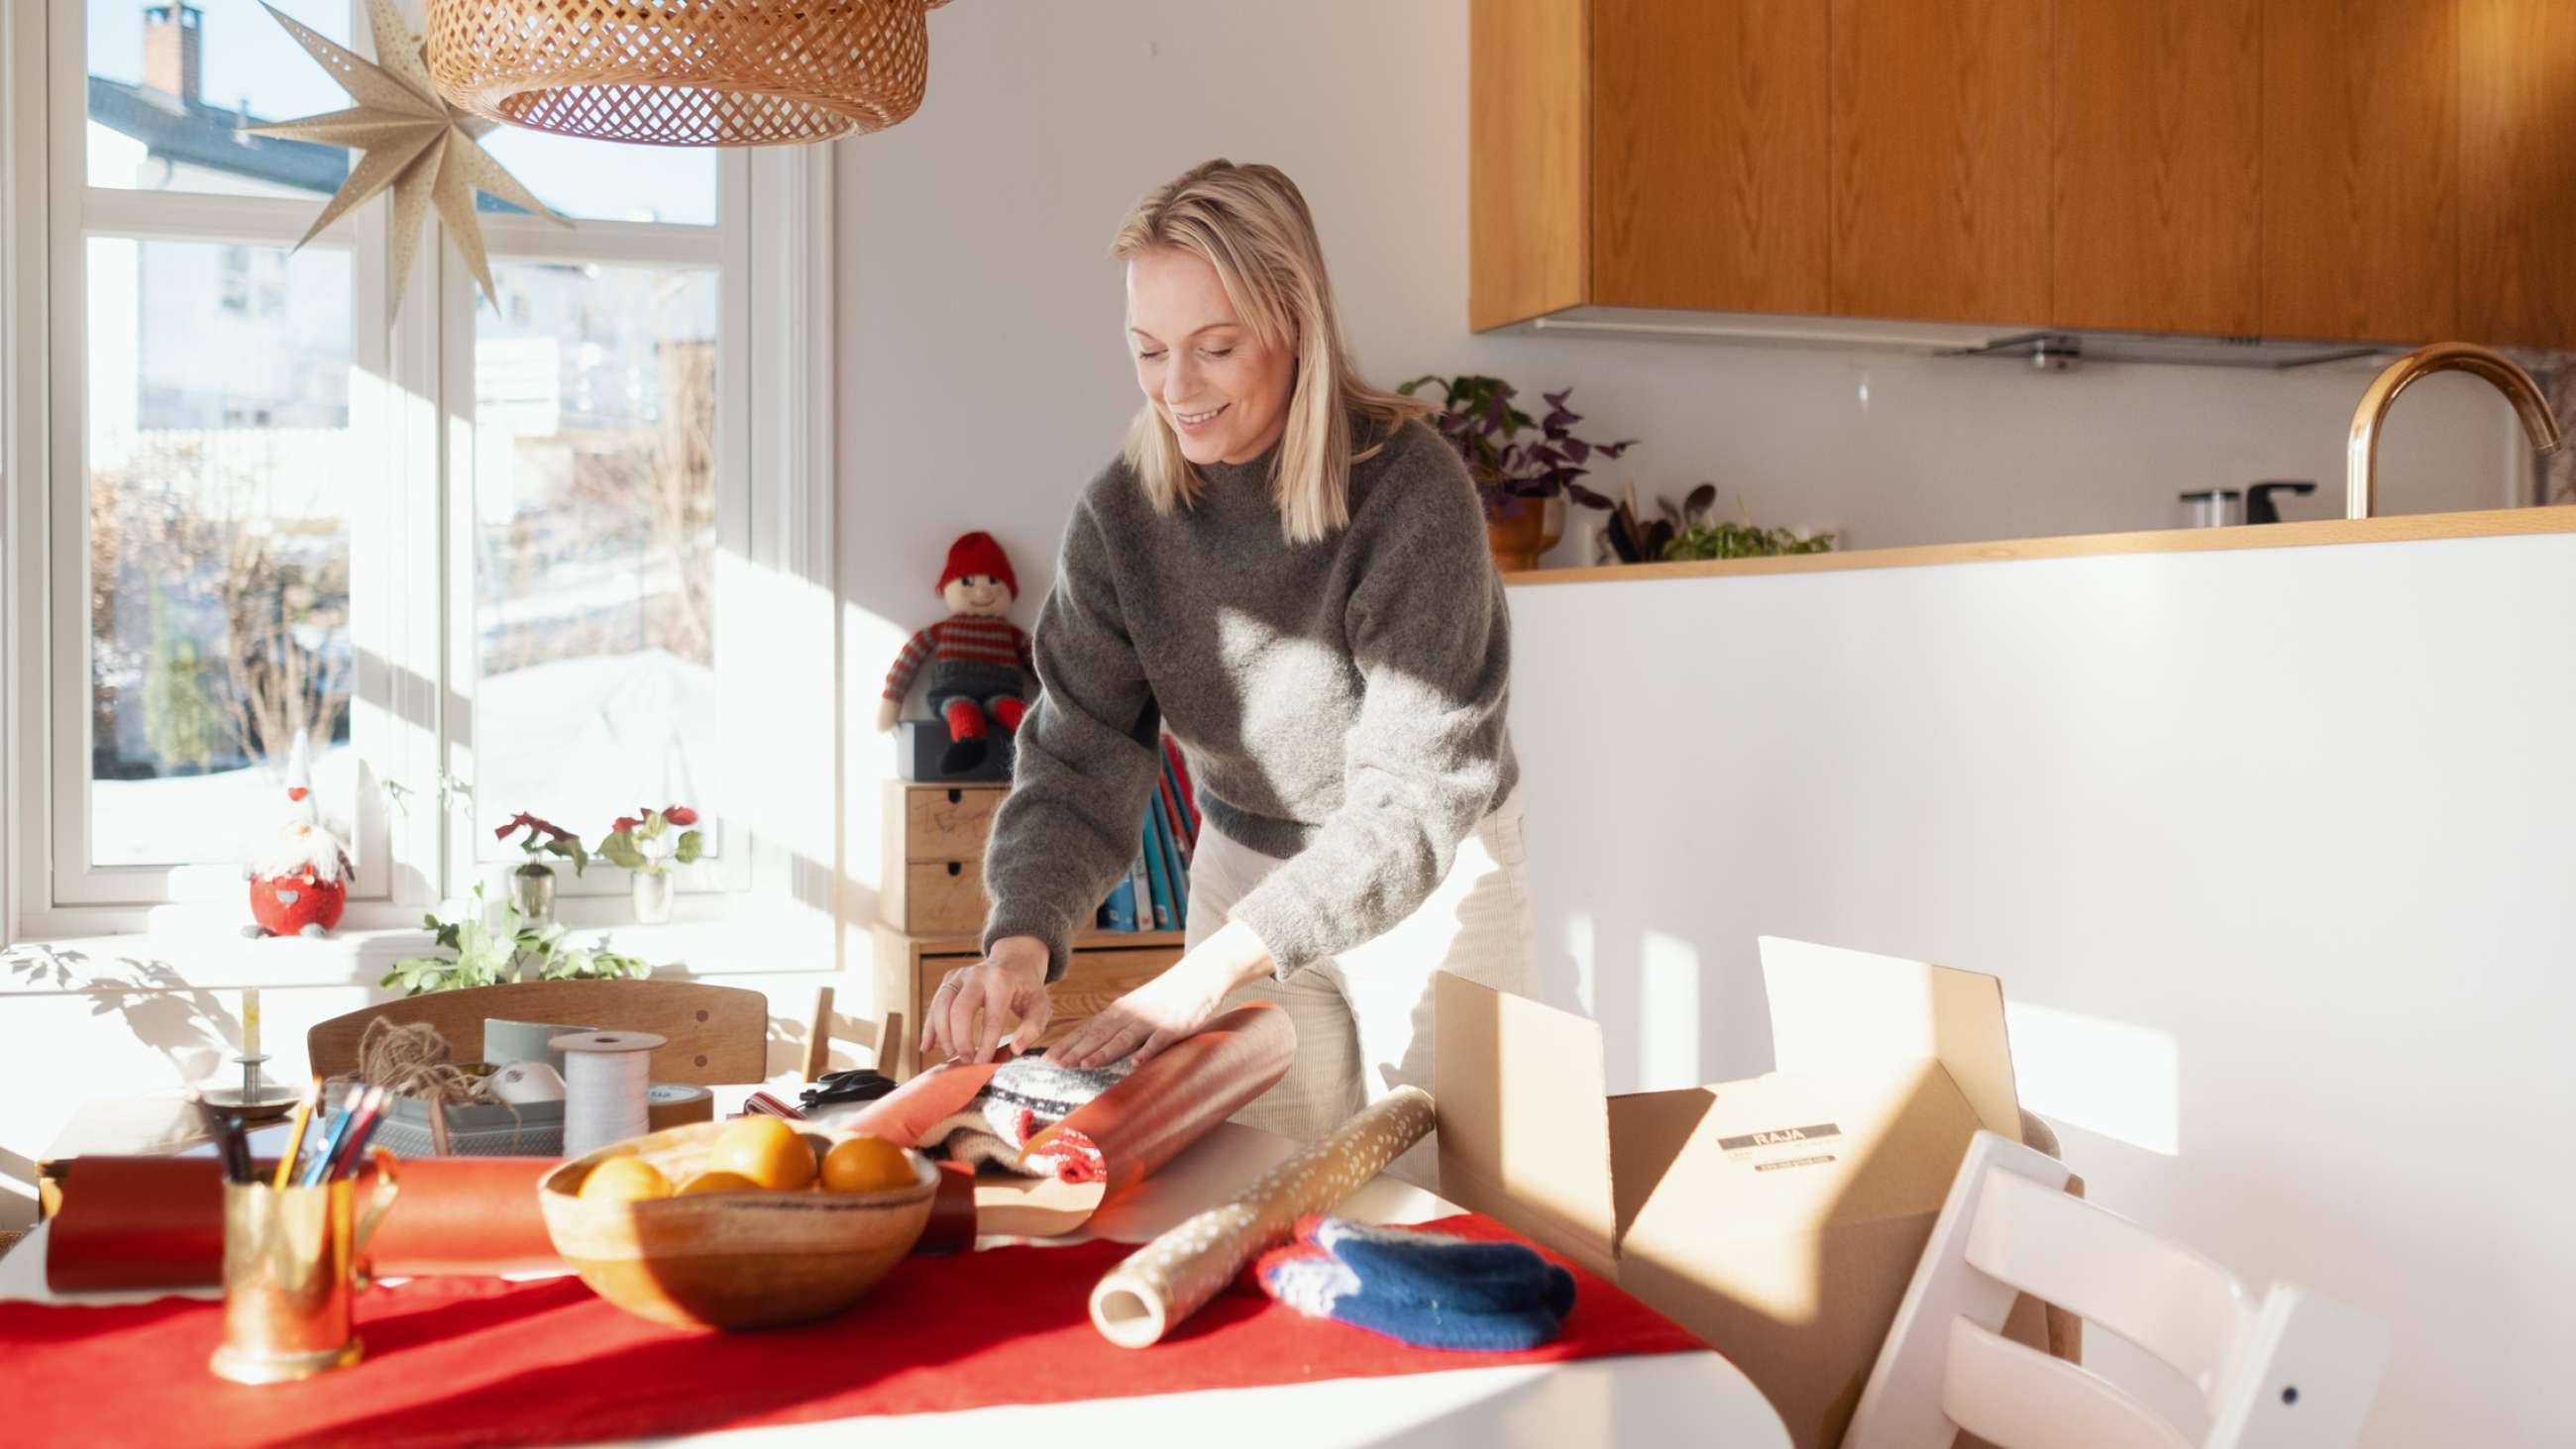 En kvinde læner sig smilende over et bord og pakker en sweater i julegave.